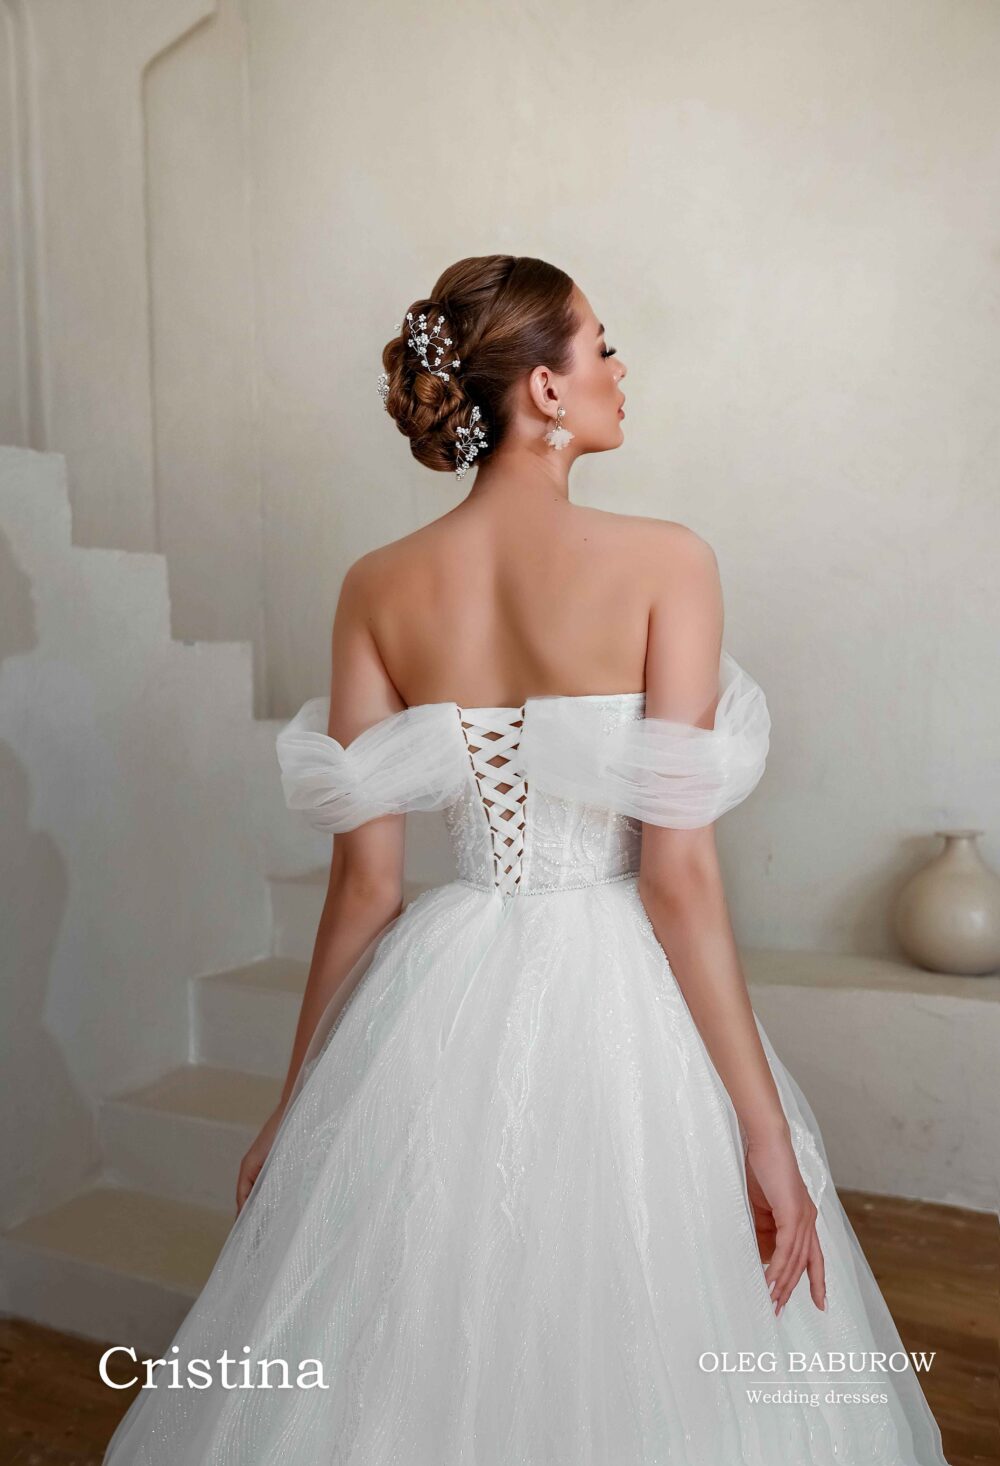 Свадебное платье Кристина